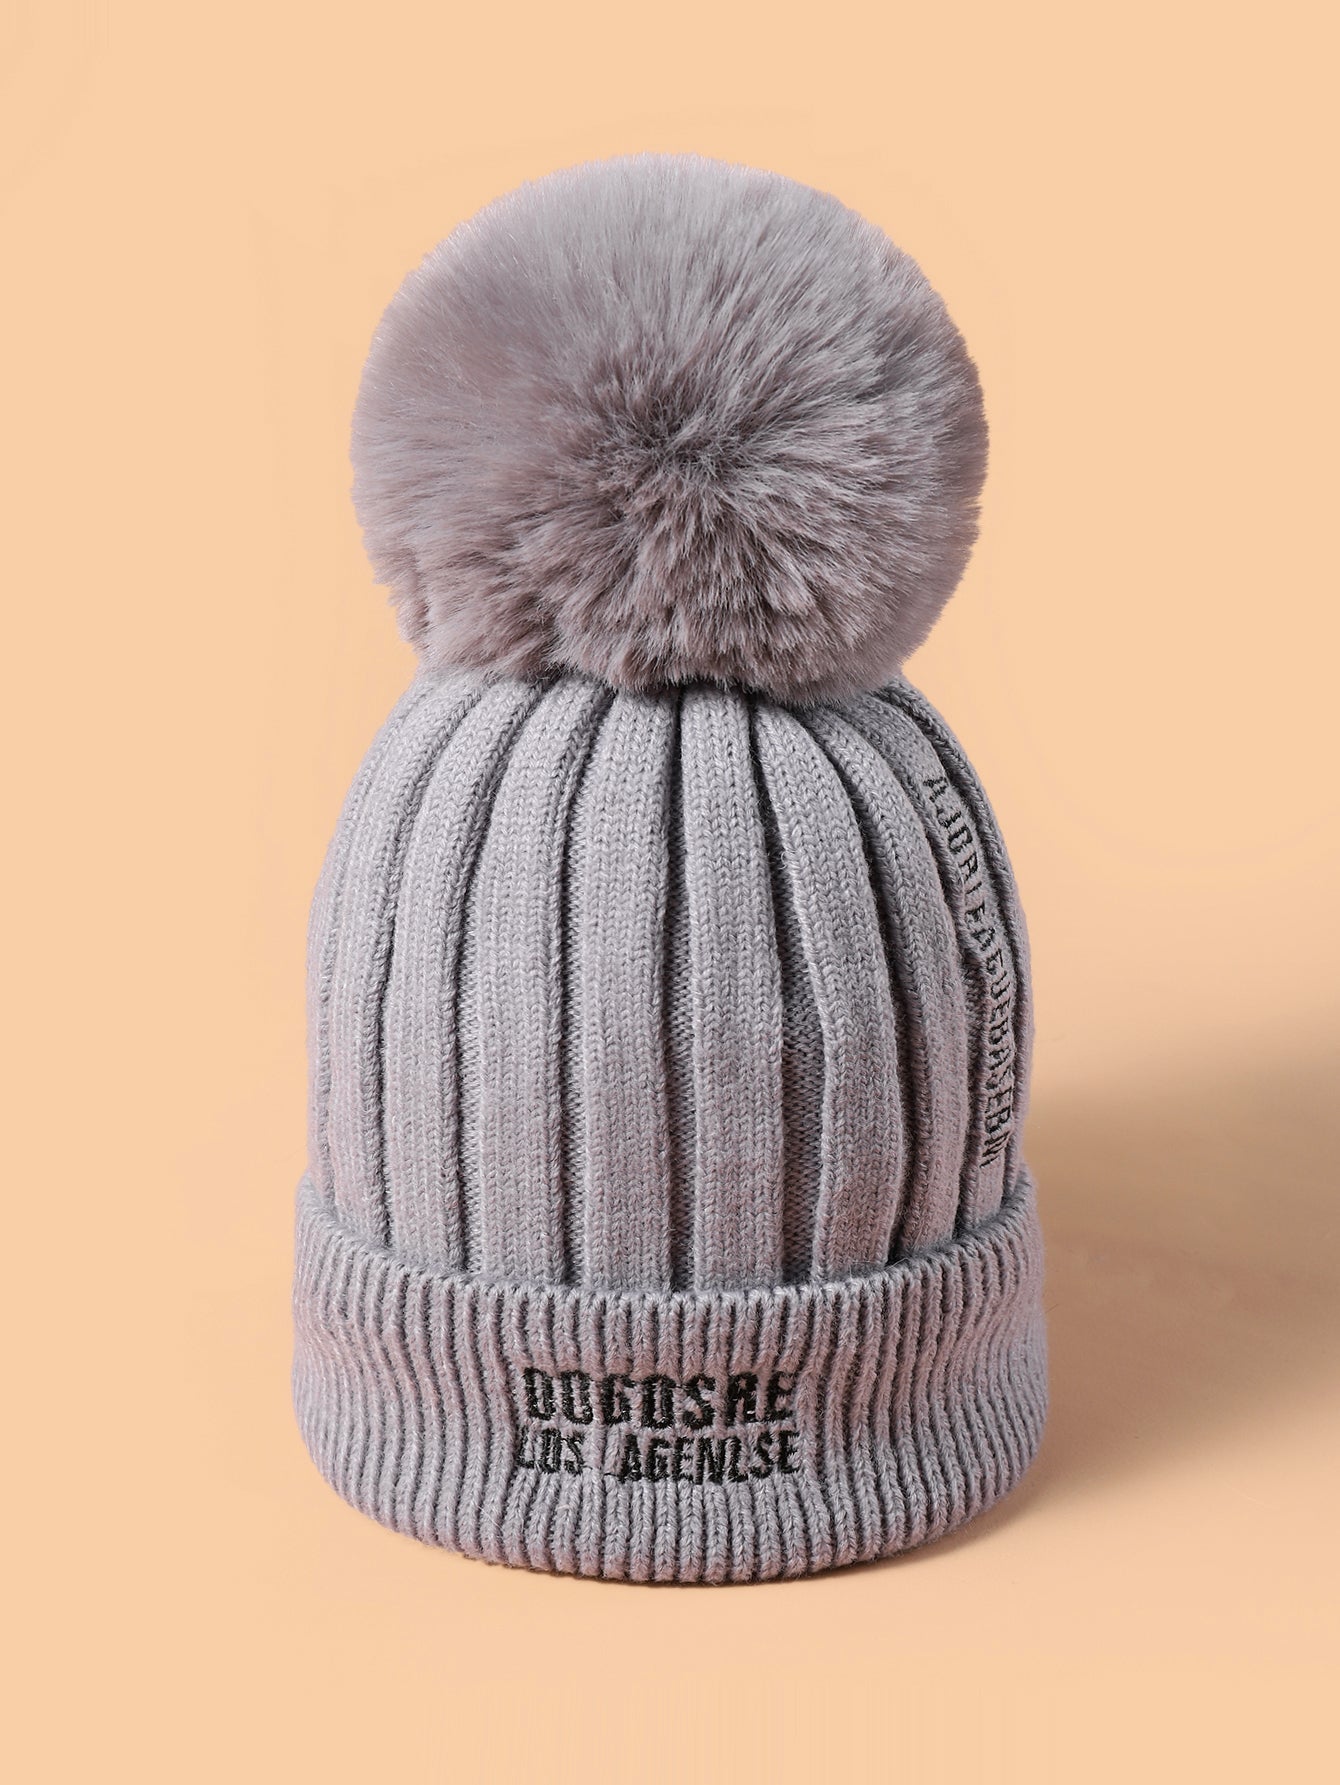 Double Layer Super Warm Pom Pom Decor Knit Beanie Winter Hat Sai Feel